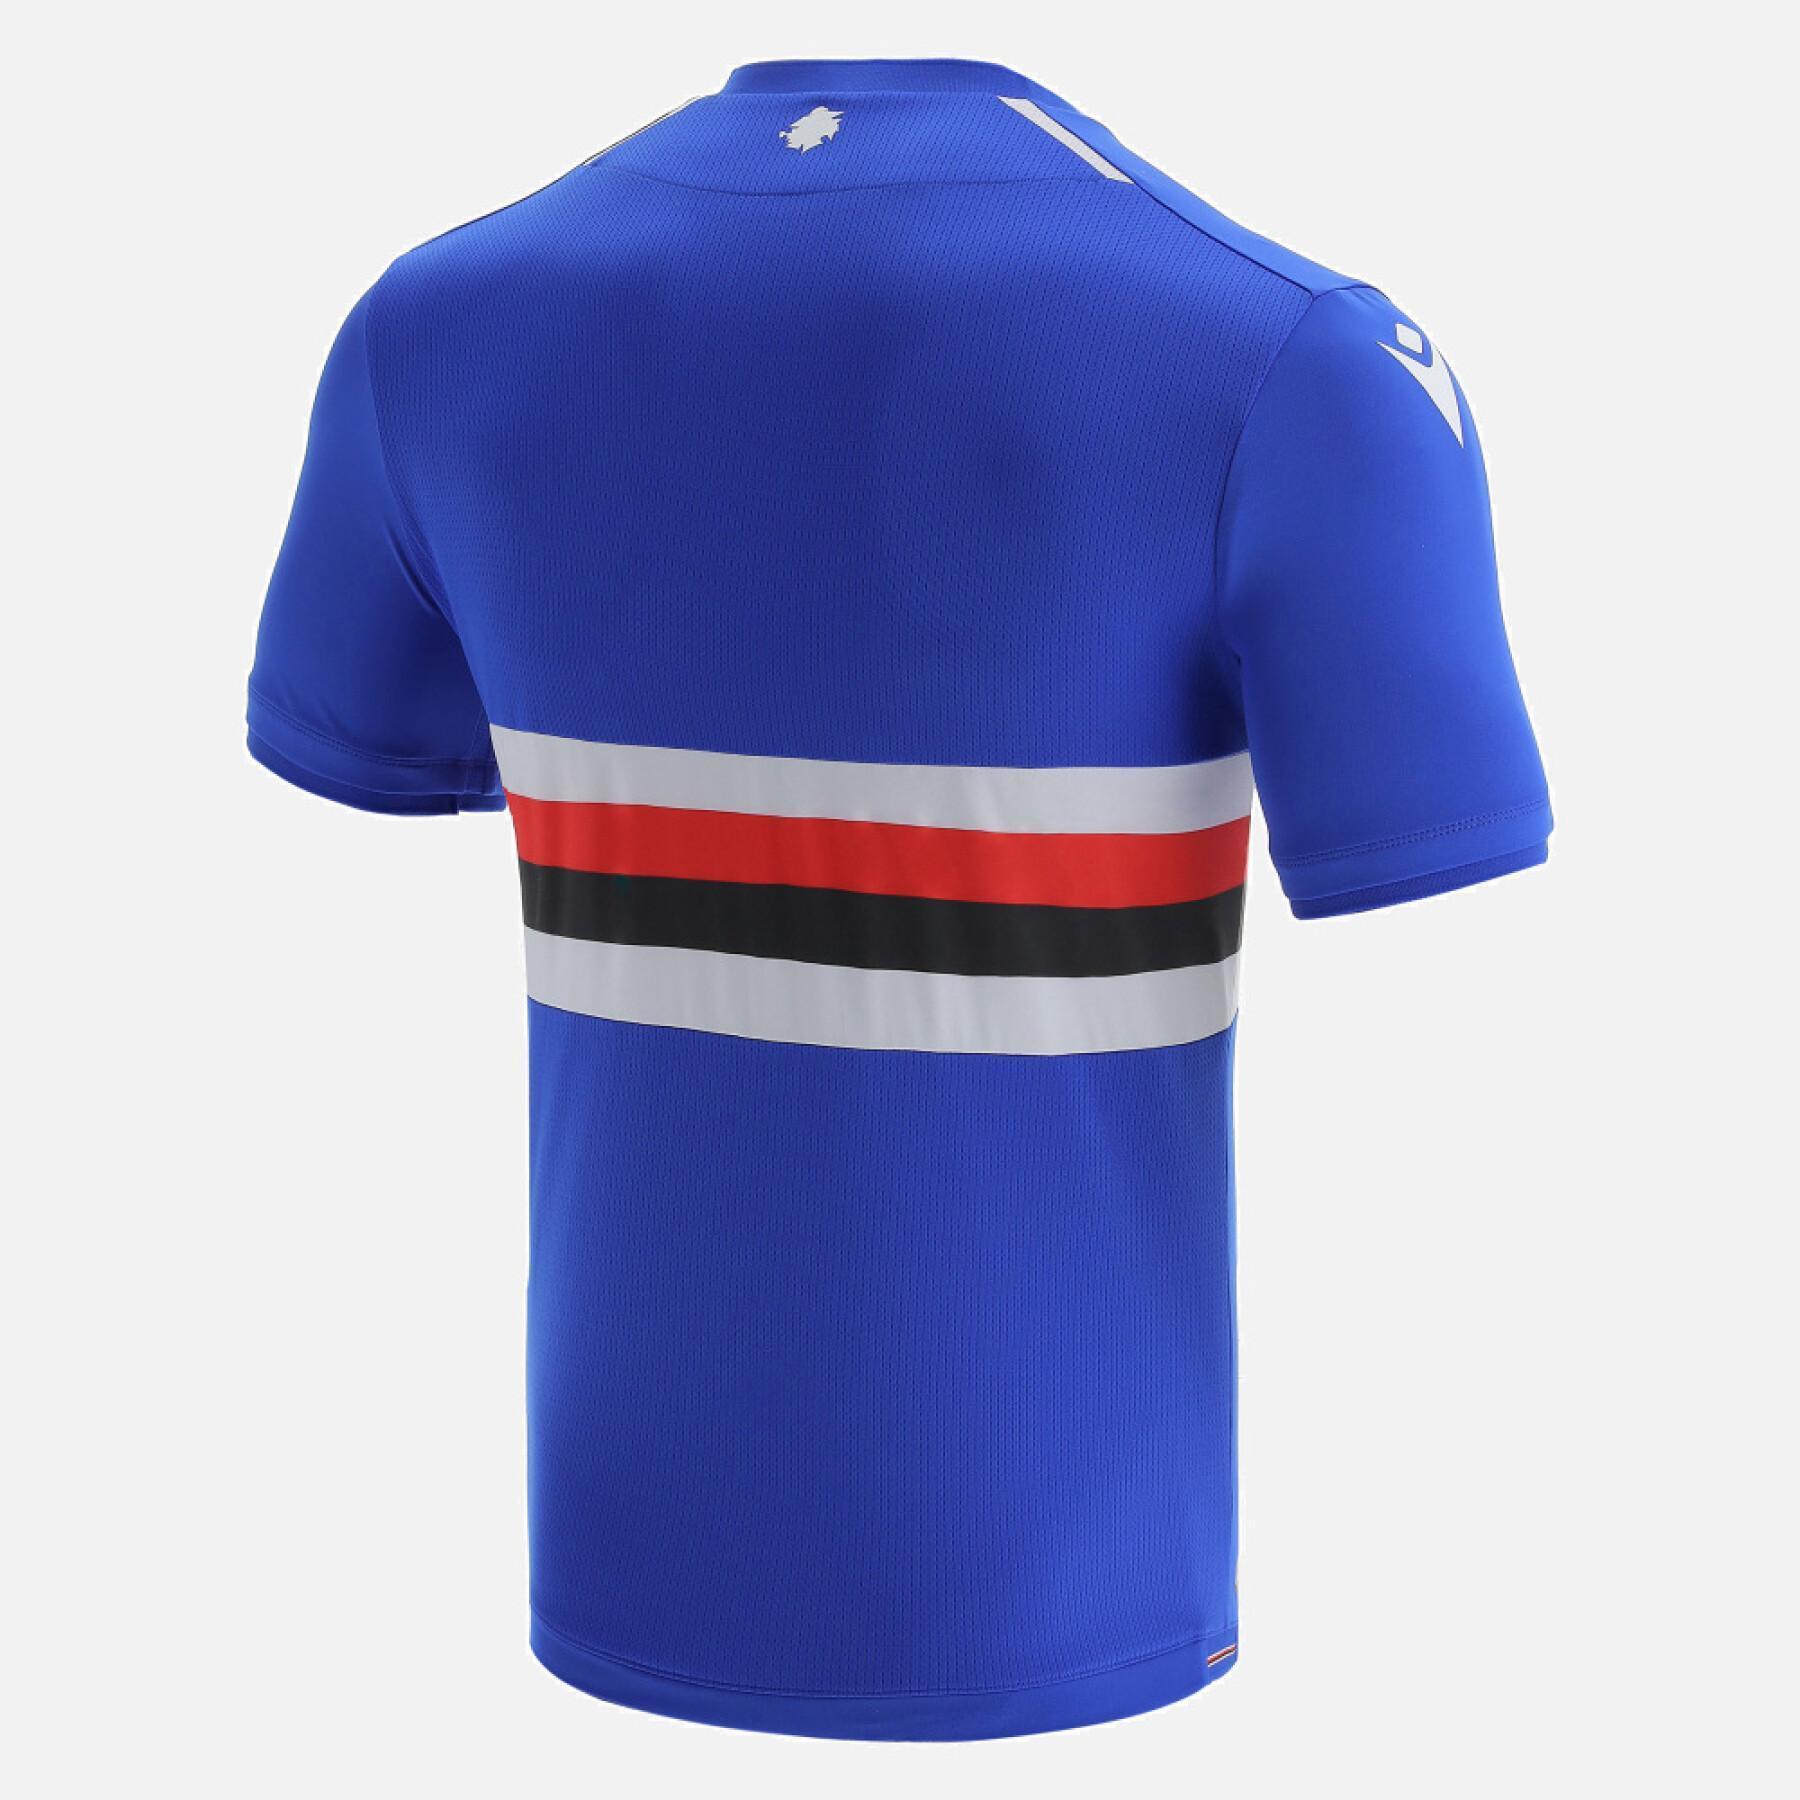 Koszulka domowa UC Sampdoria 2021/22